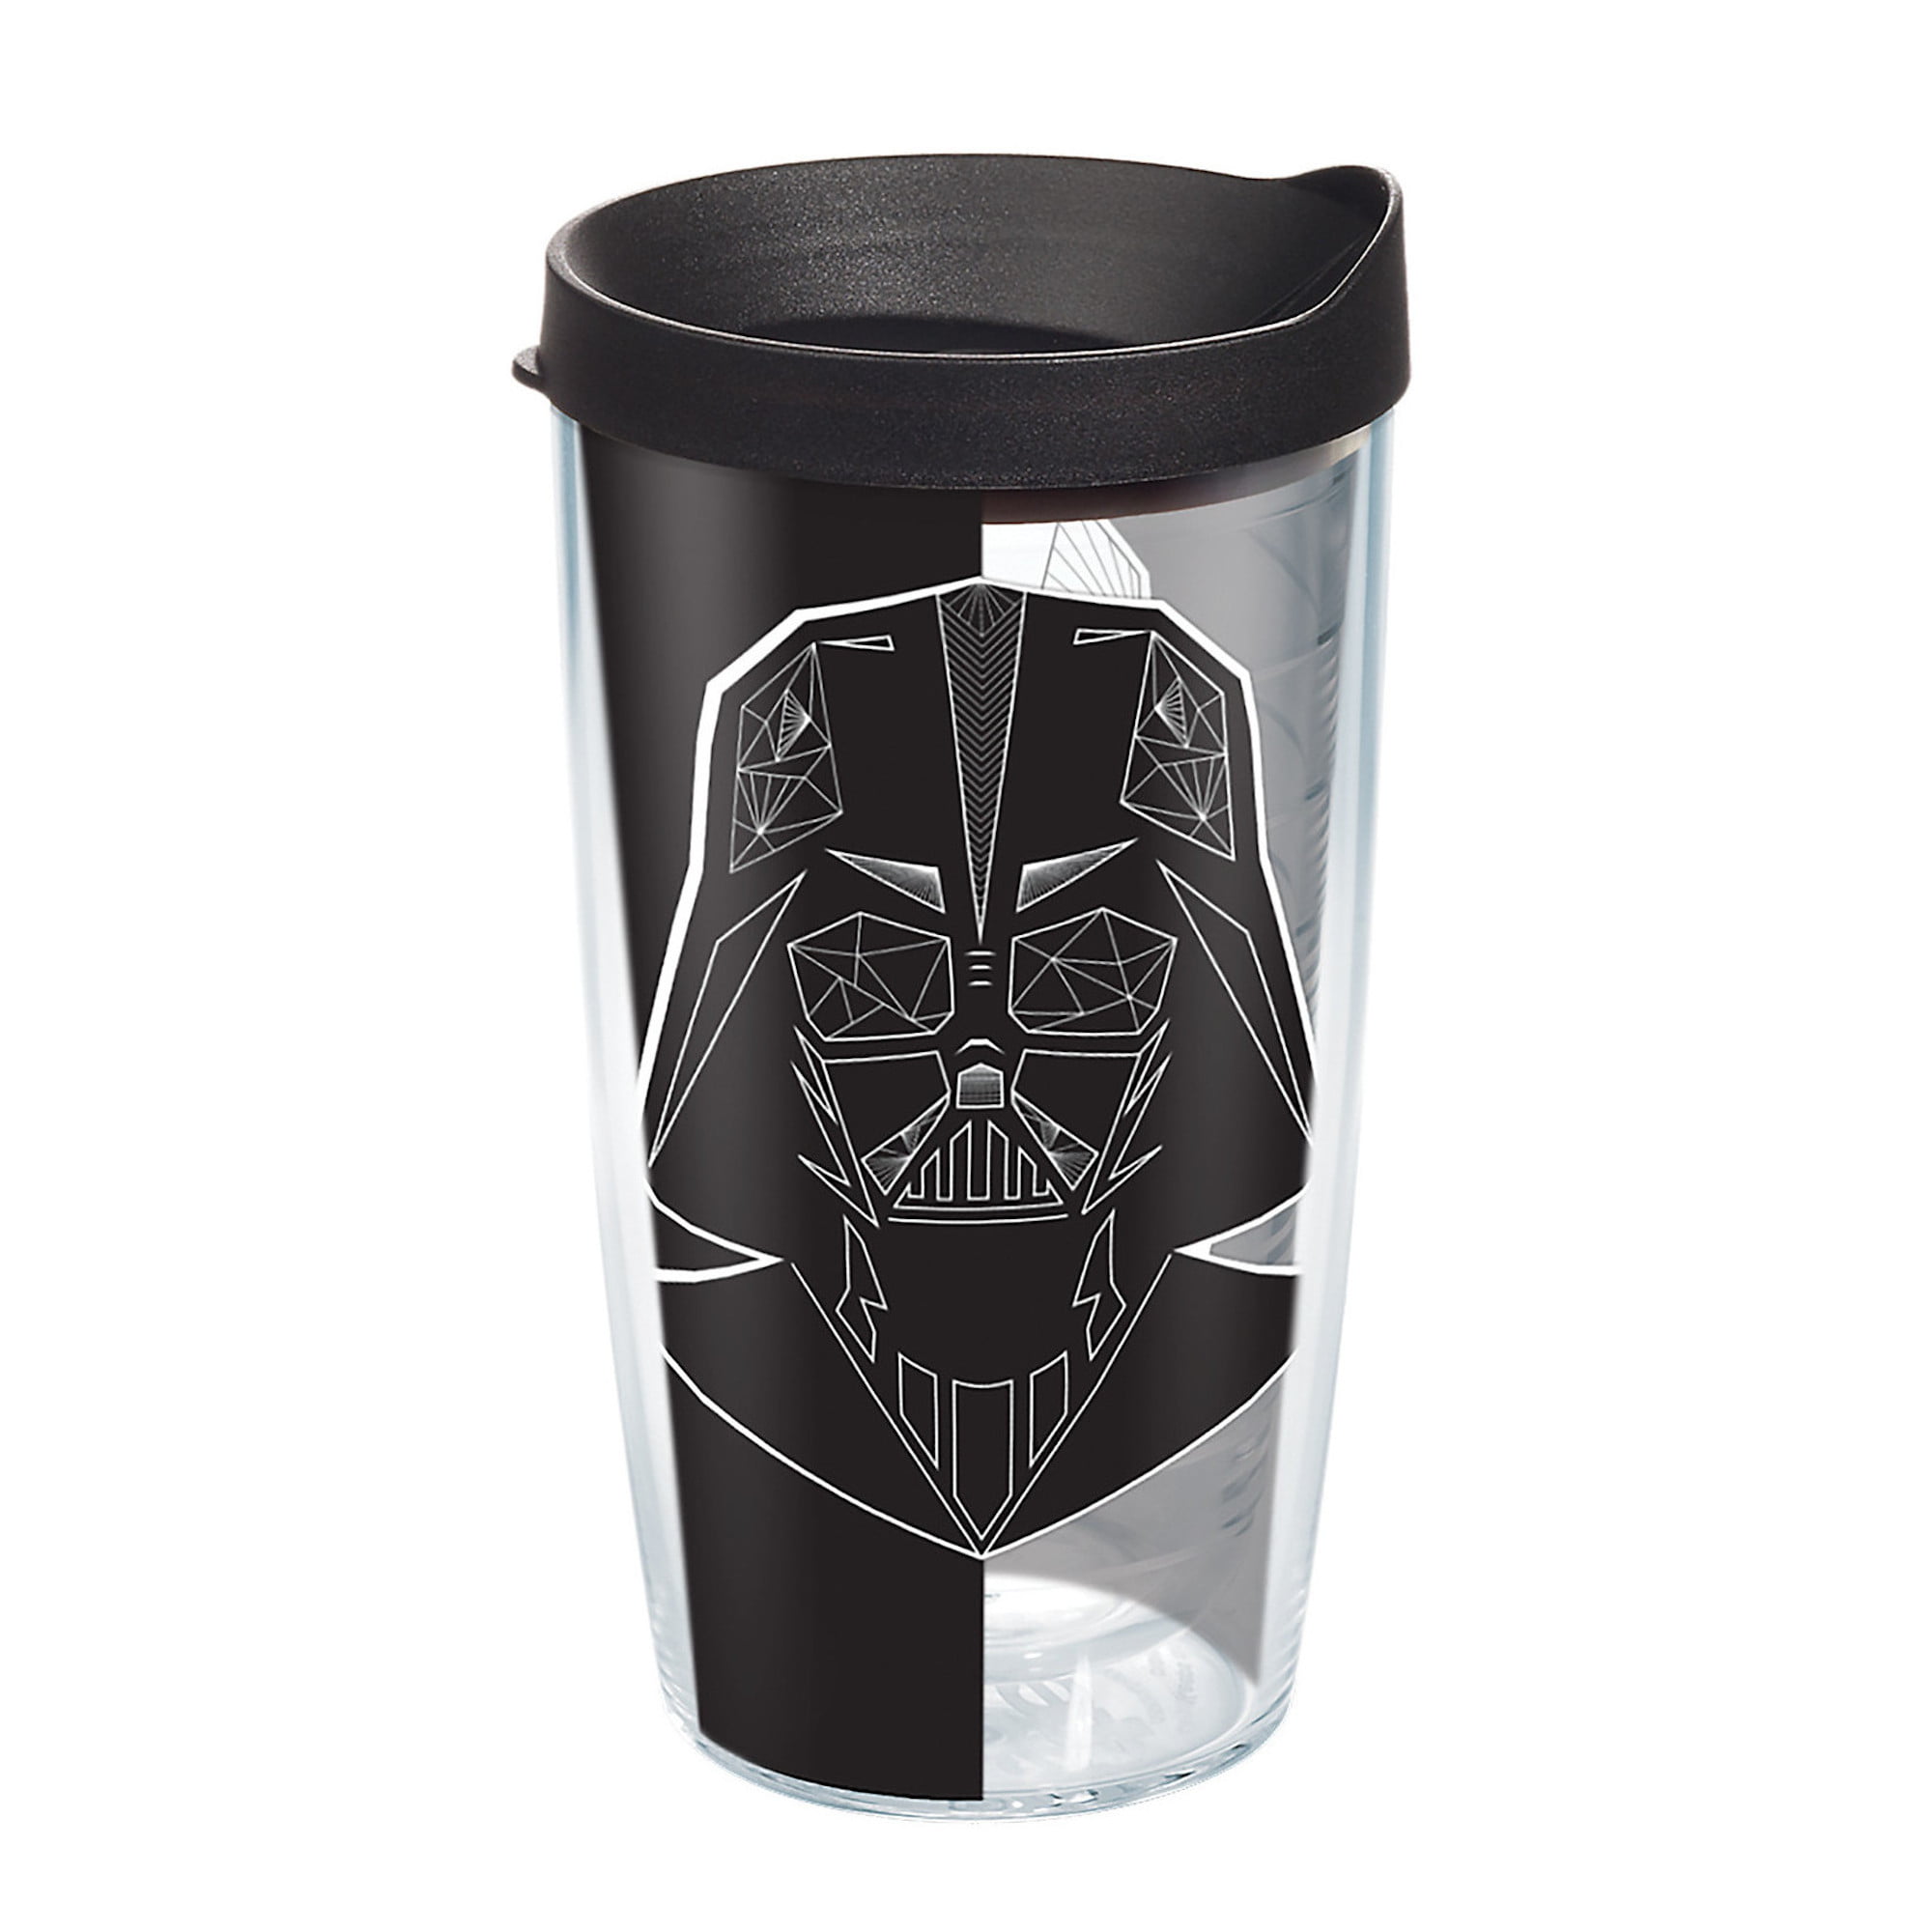 Star Wars Vader Trooper 16 oz Tumbler with lid - Walmart.com - Walmart.com